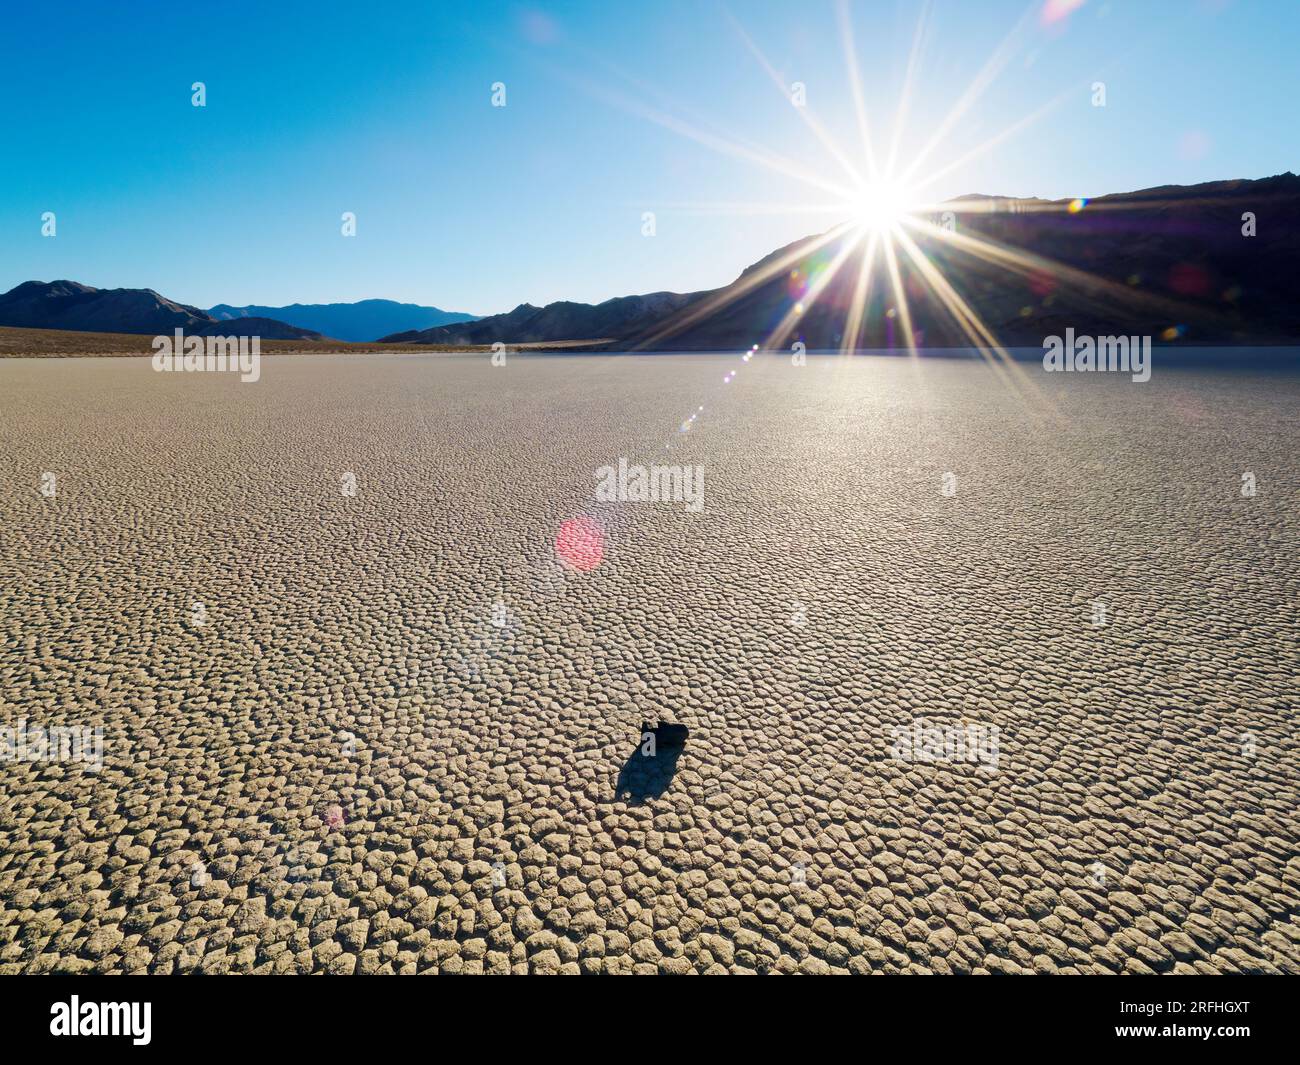 Un rocher en mouvement à l'hippodrome, une playa ou un lit de lac asséché, dans le parc national de Death Valley, Californie, États-Unis. Banque D'Images